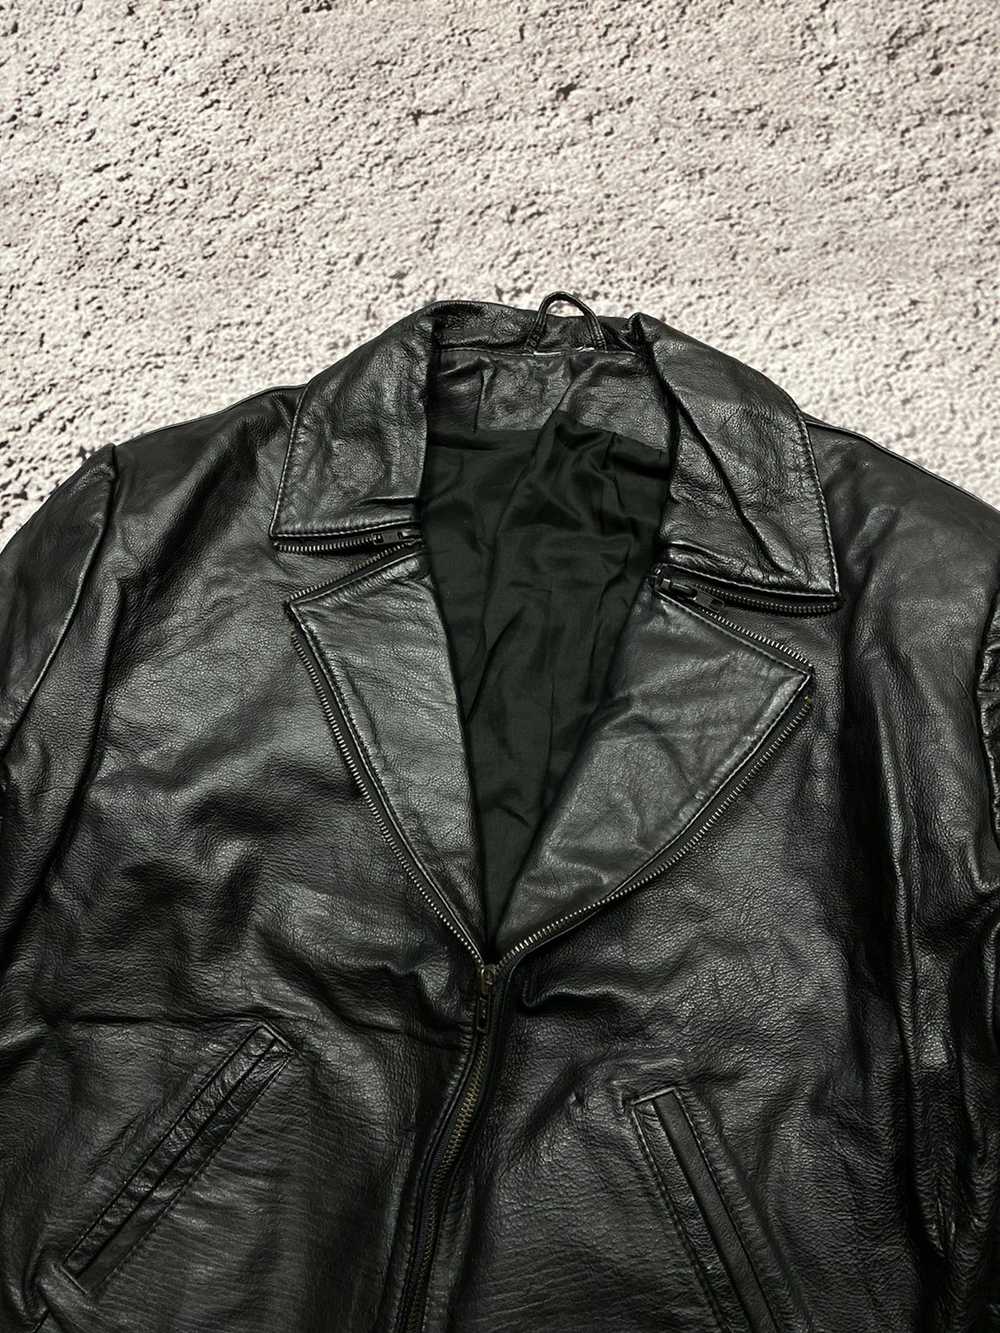 Avant Garde × Designer × Leather Jacket Vintage a… - image 2